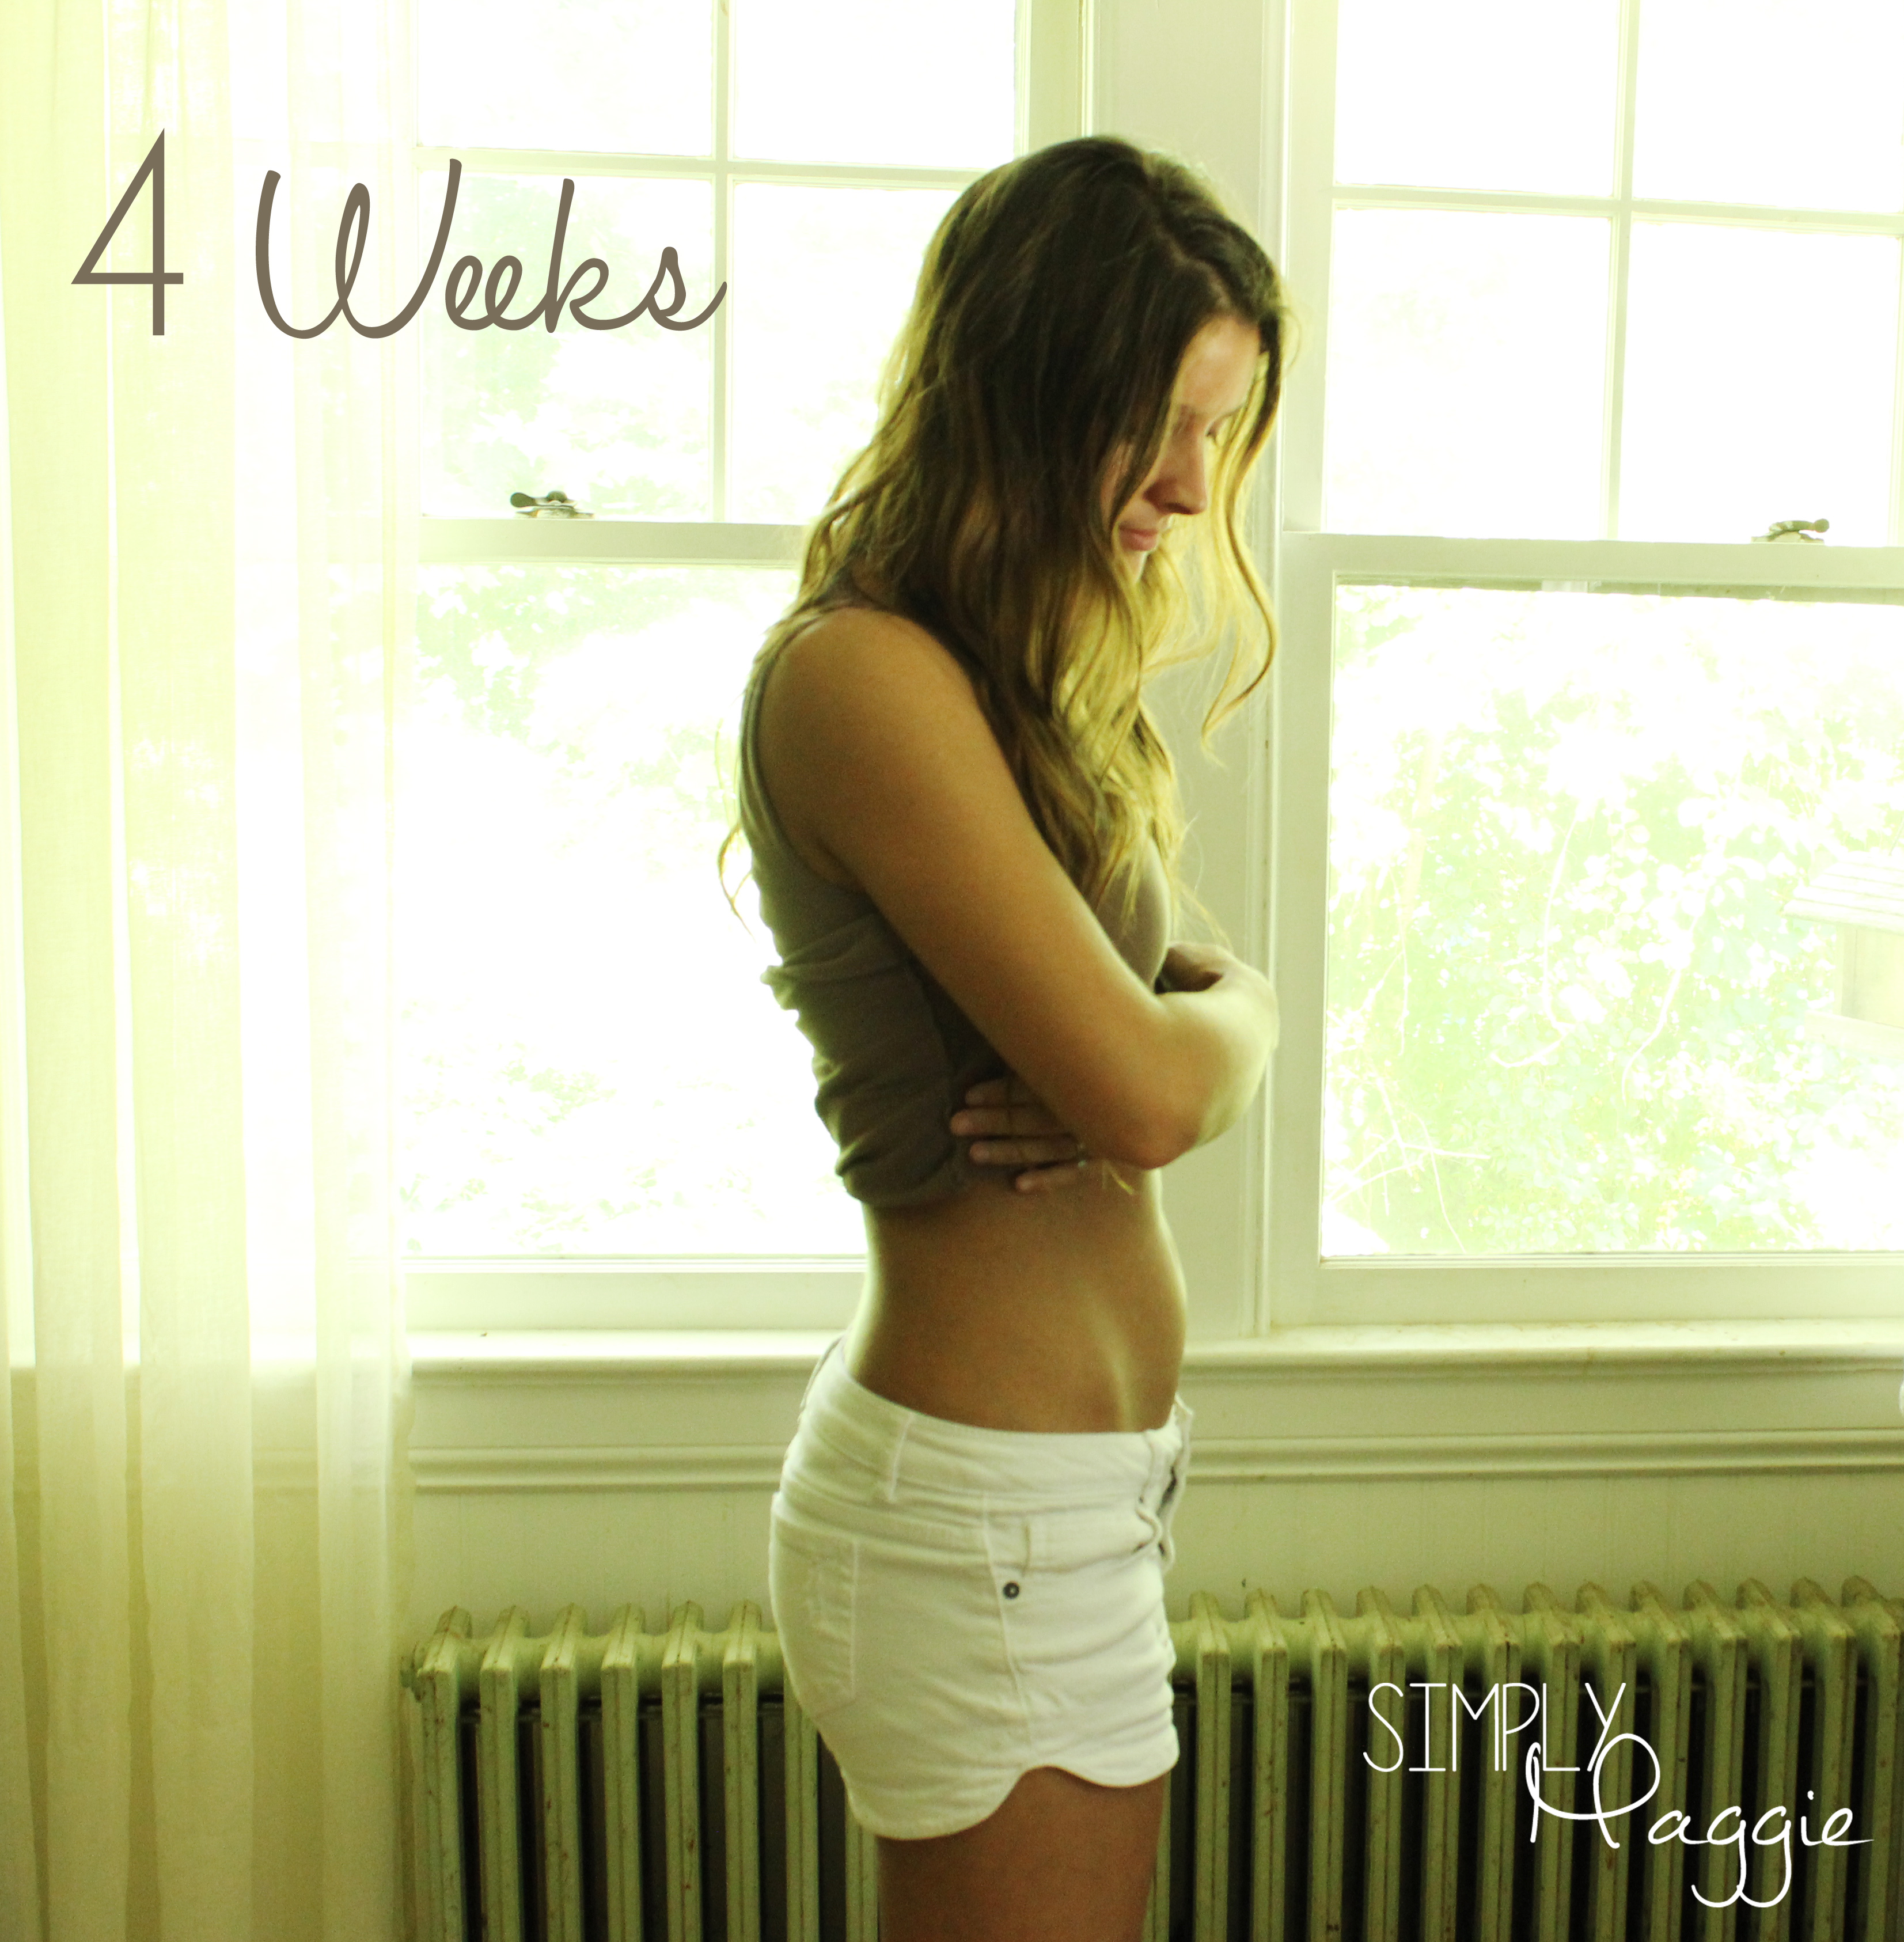 I Am Seven Weeks Pregnant 81